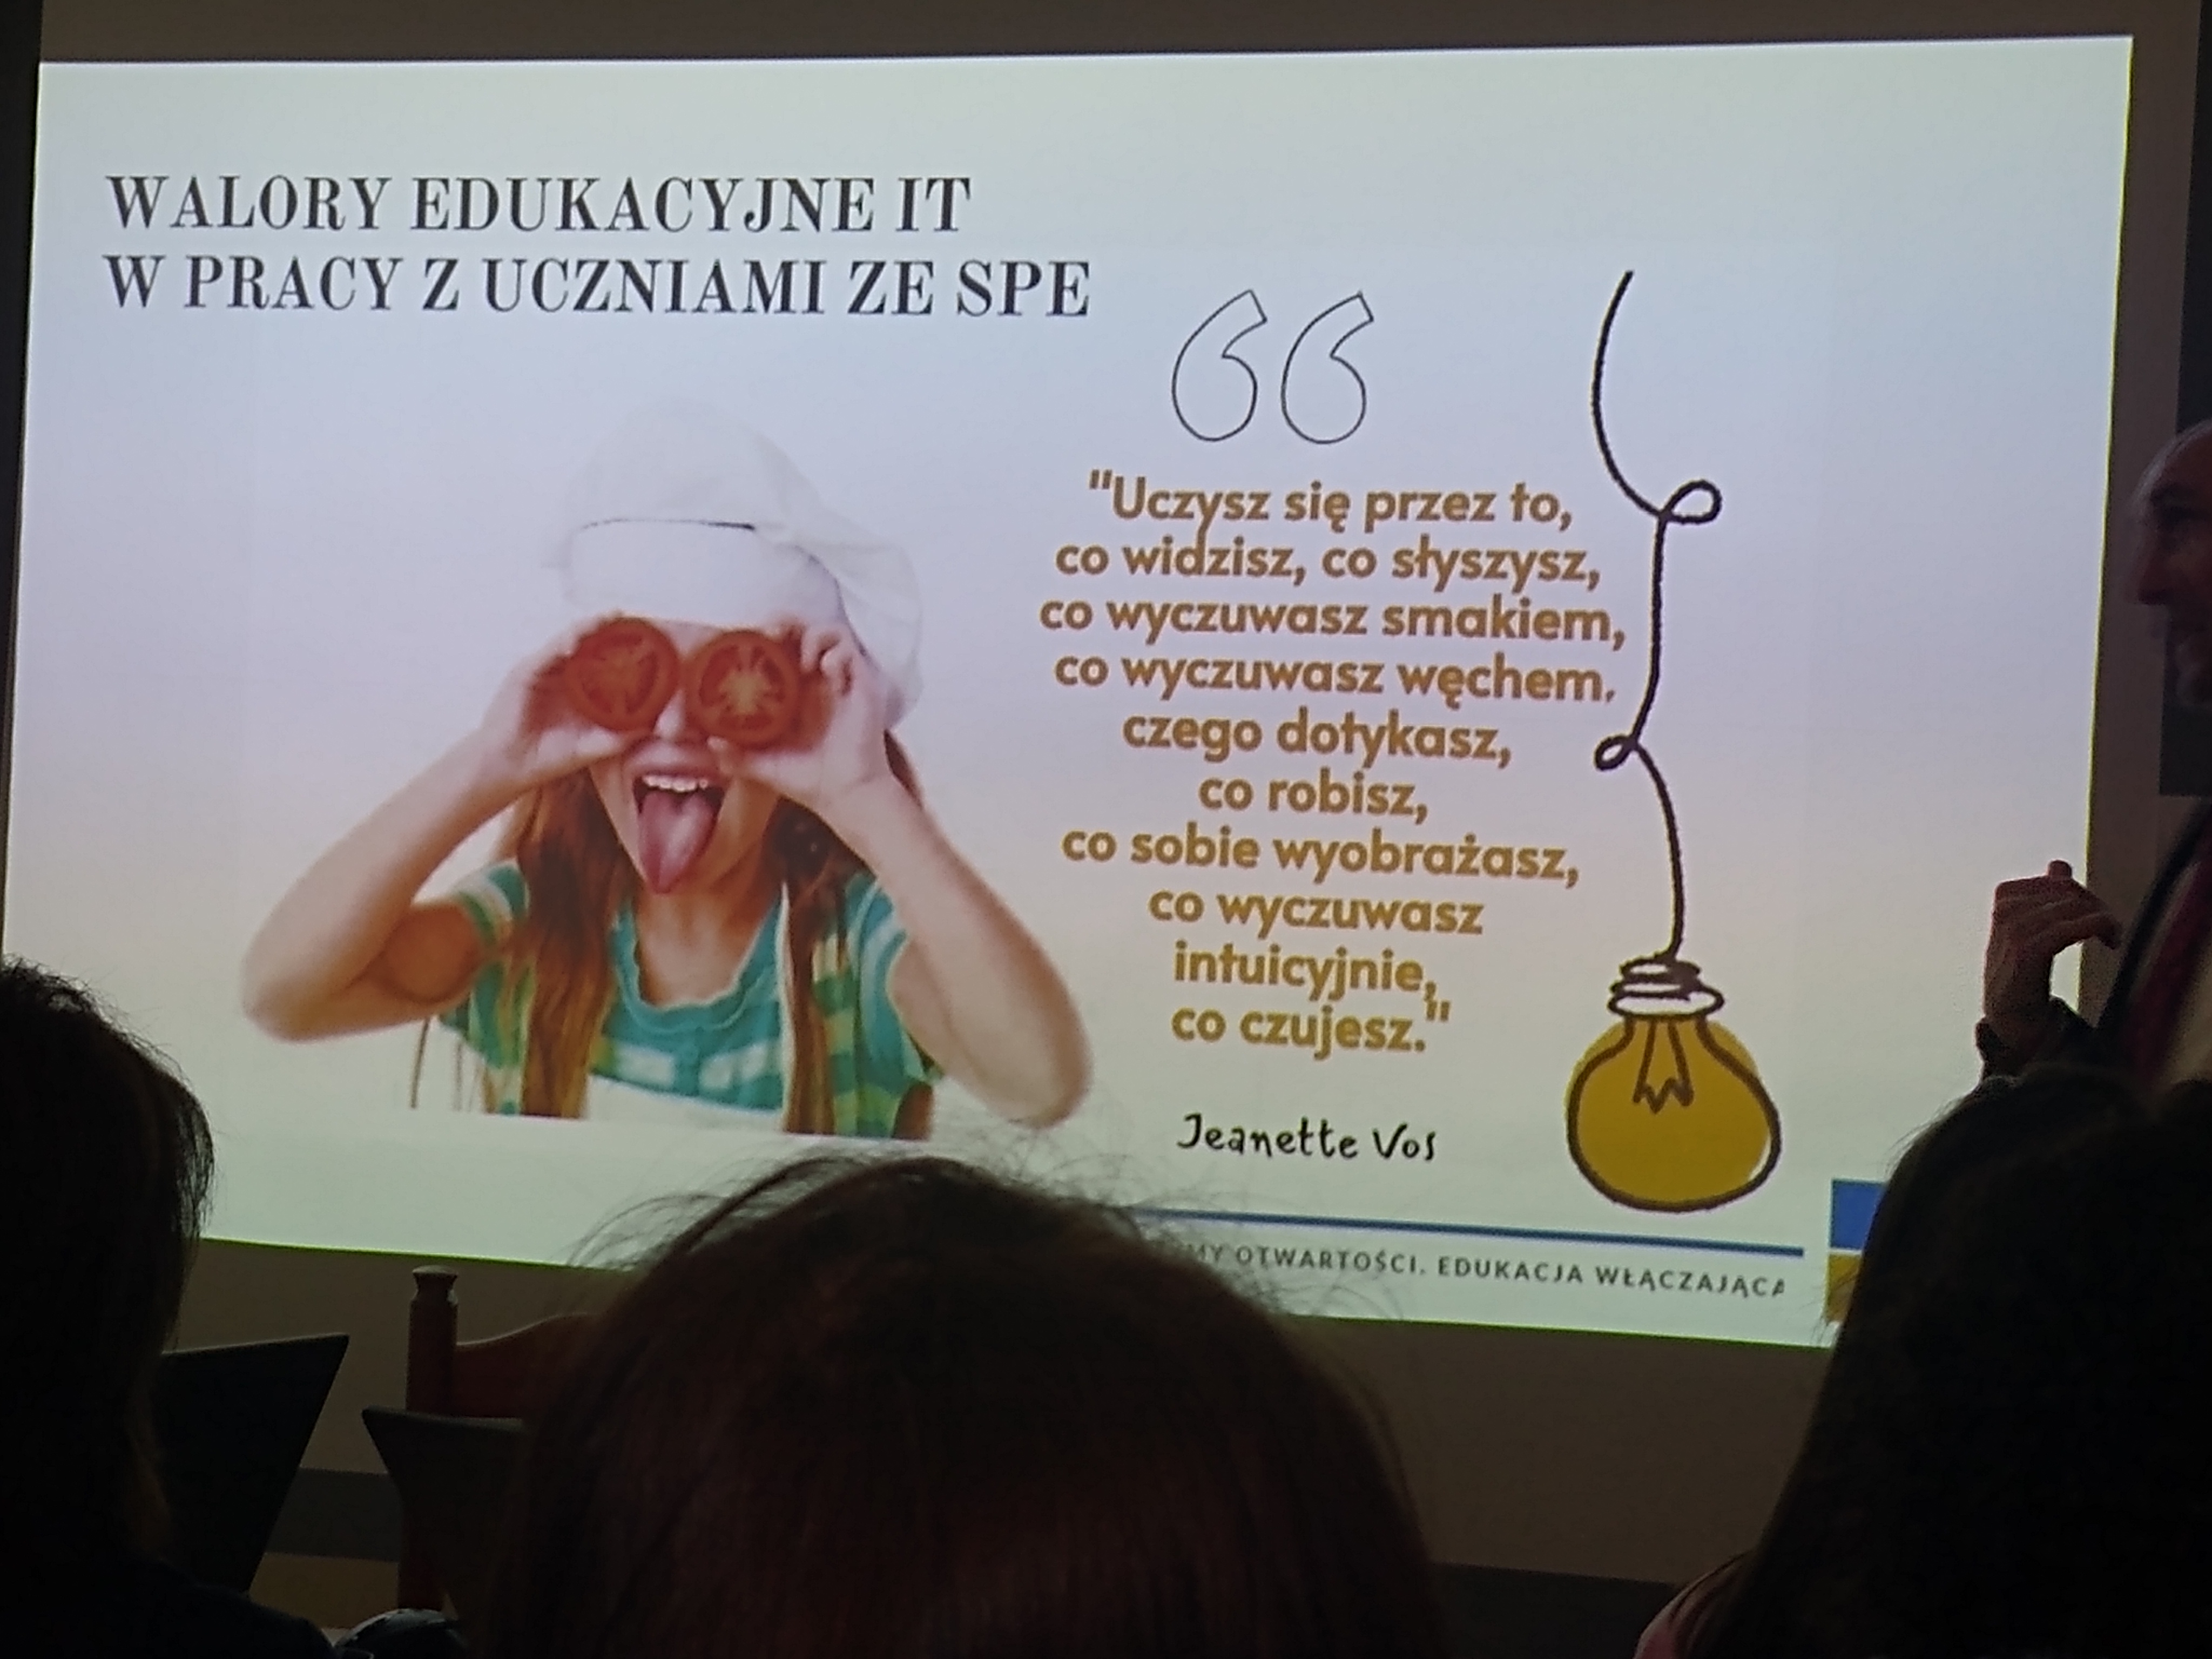 Prezentacja slajdu Walory edukacyjne IT w pracy z uczniami ze specjalnymi potrzebami edukacyjnymi